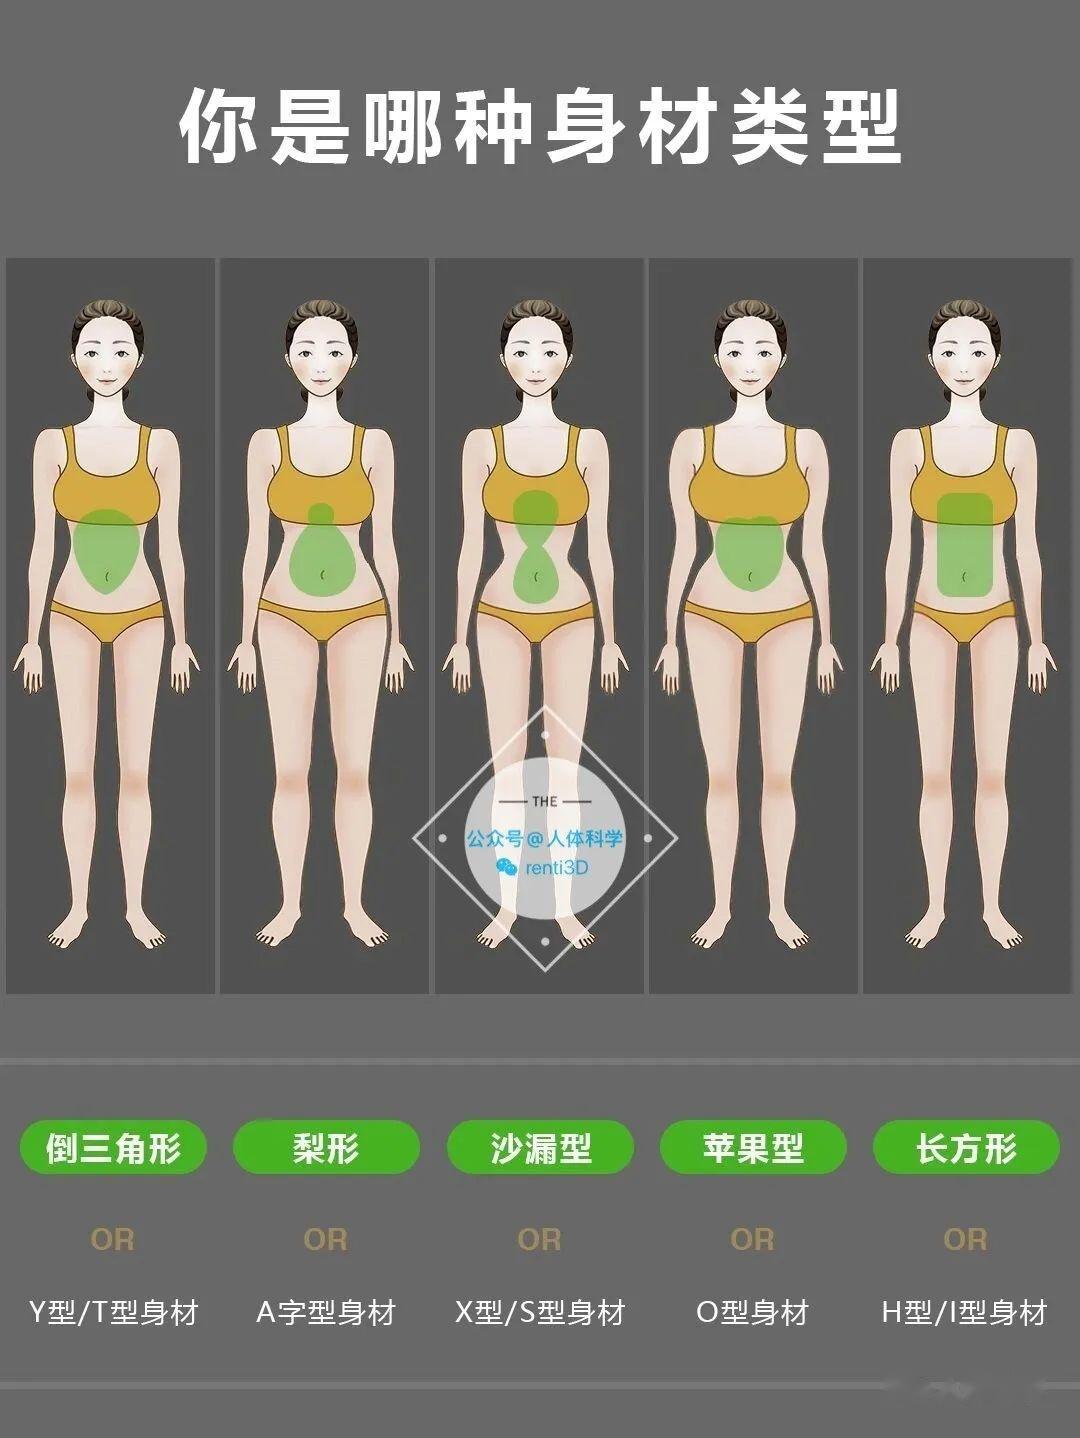 每个人的身材都不一样,但是大致都在这5种基本形状之内 ,每一种身材都